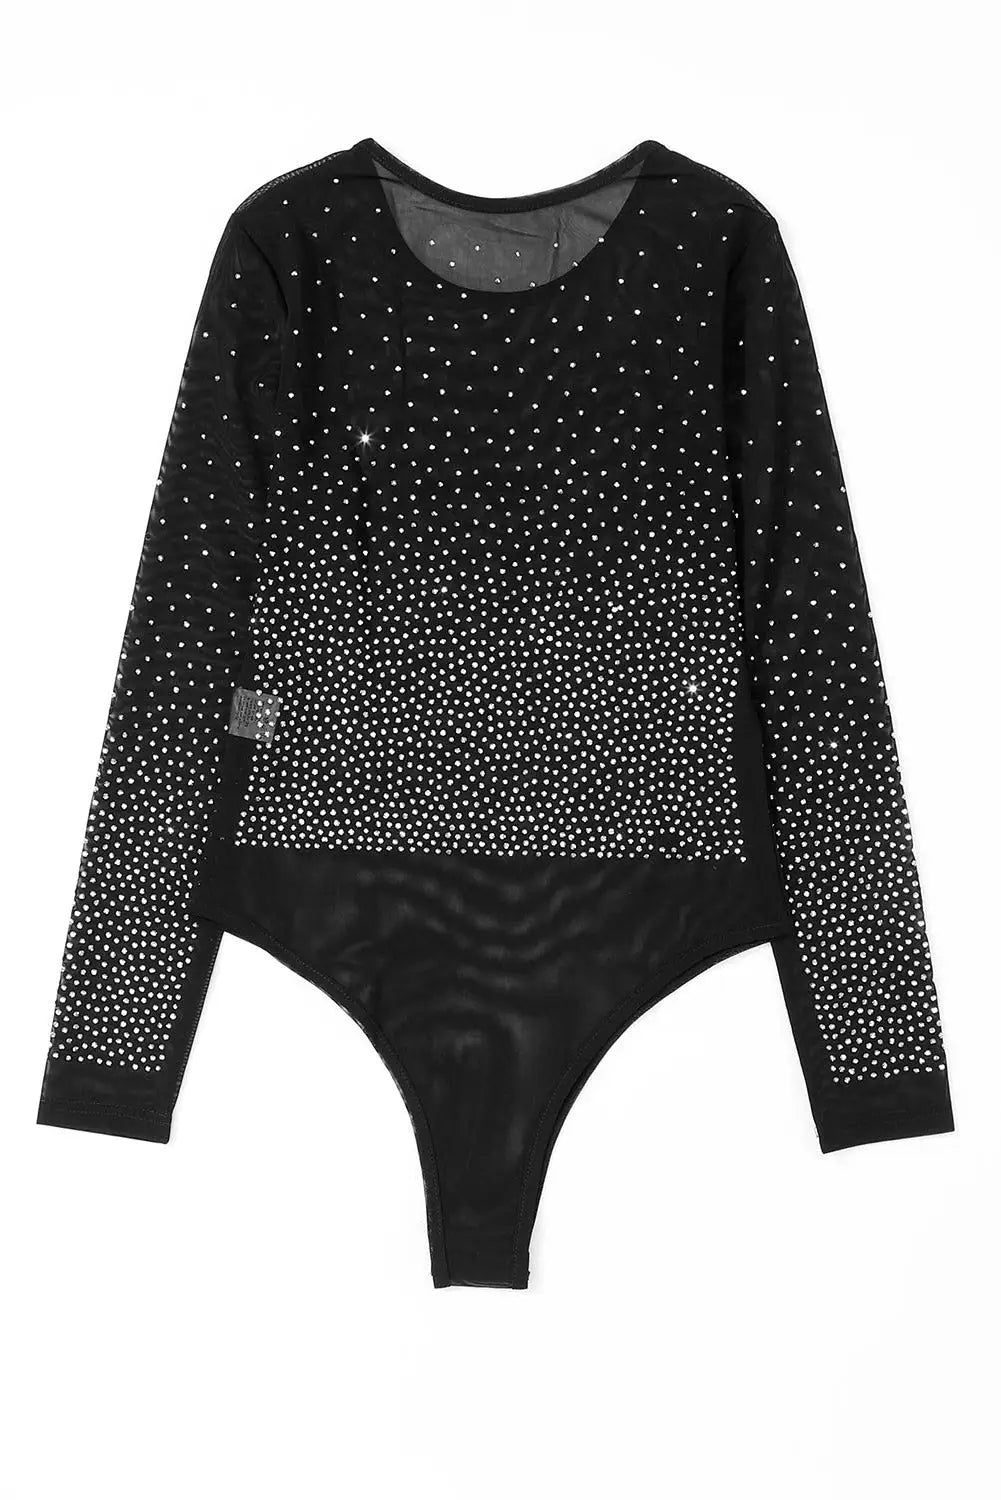 Black rhinestone embellished mesh long sleeve bodysuit - bodysuits